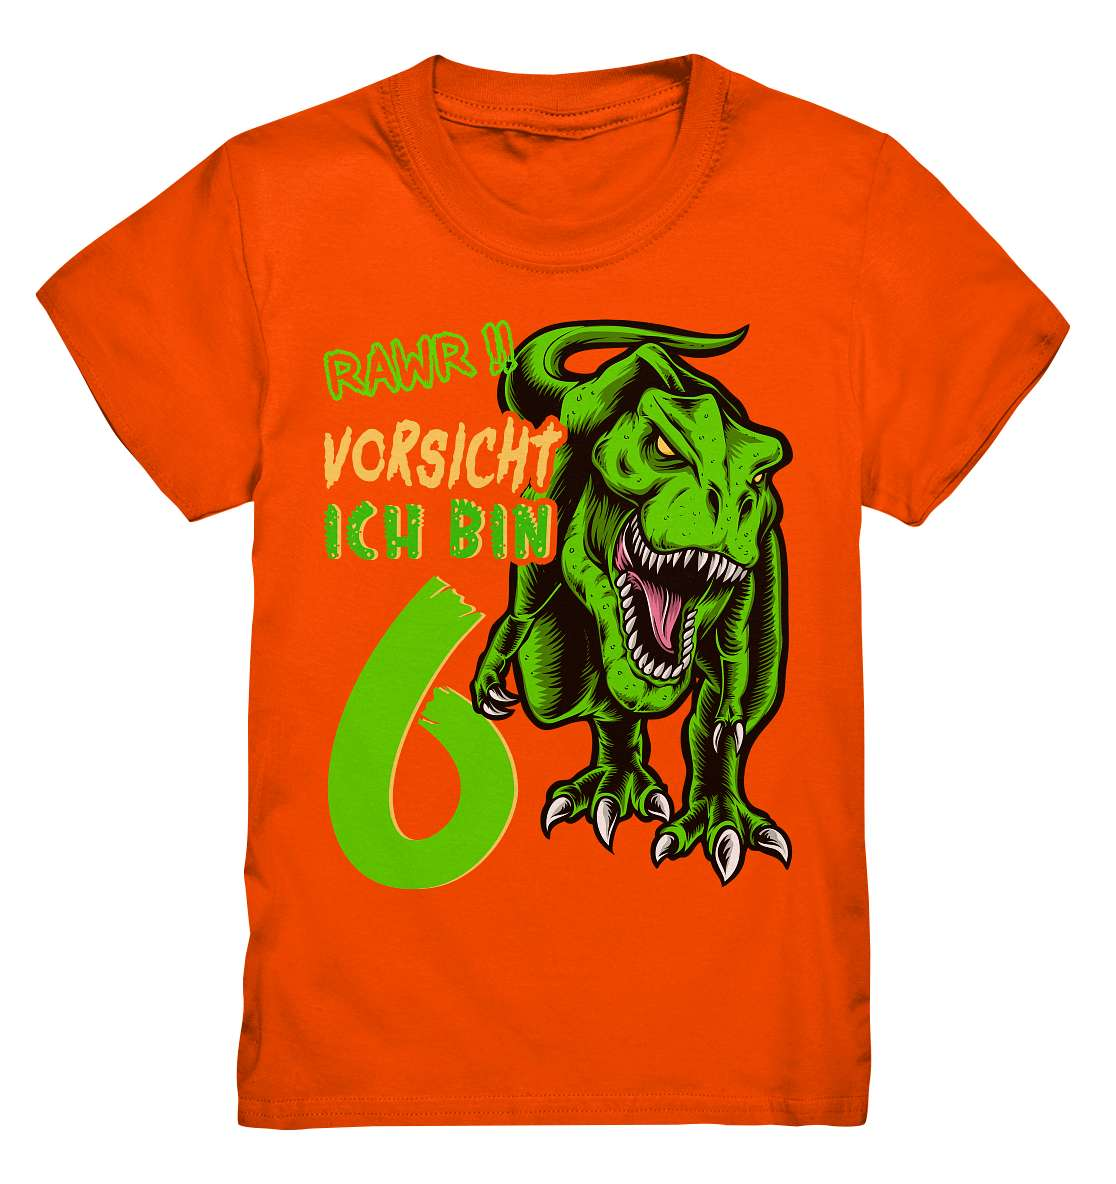 6. Kinder Geburtstag - T-REX Dinosaurier - Ich bin 6 Jahre - Geschenk - Kids Premium Shirt